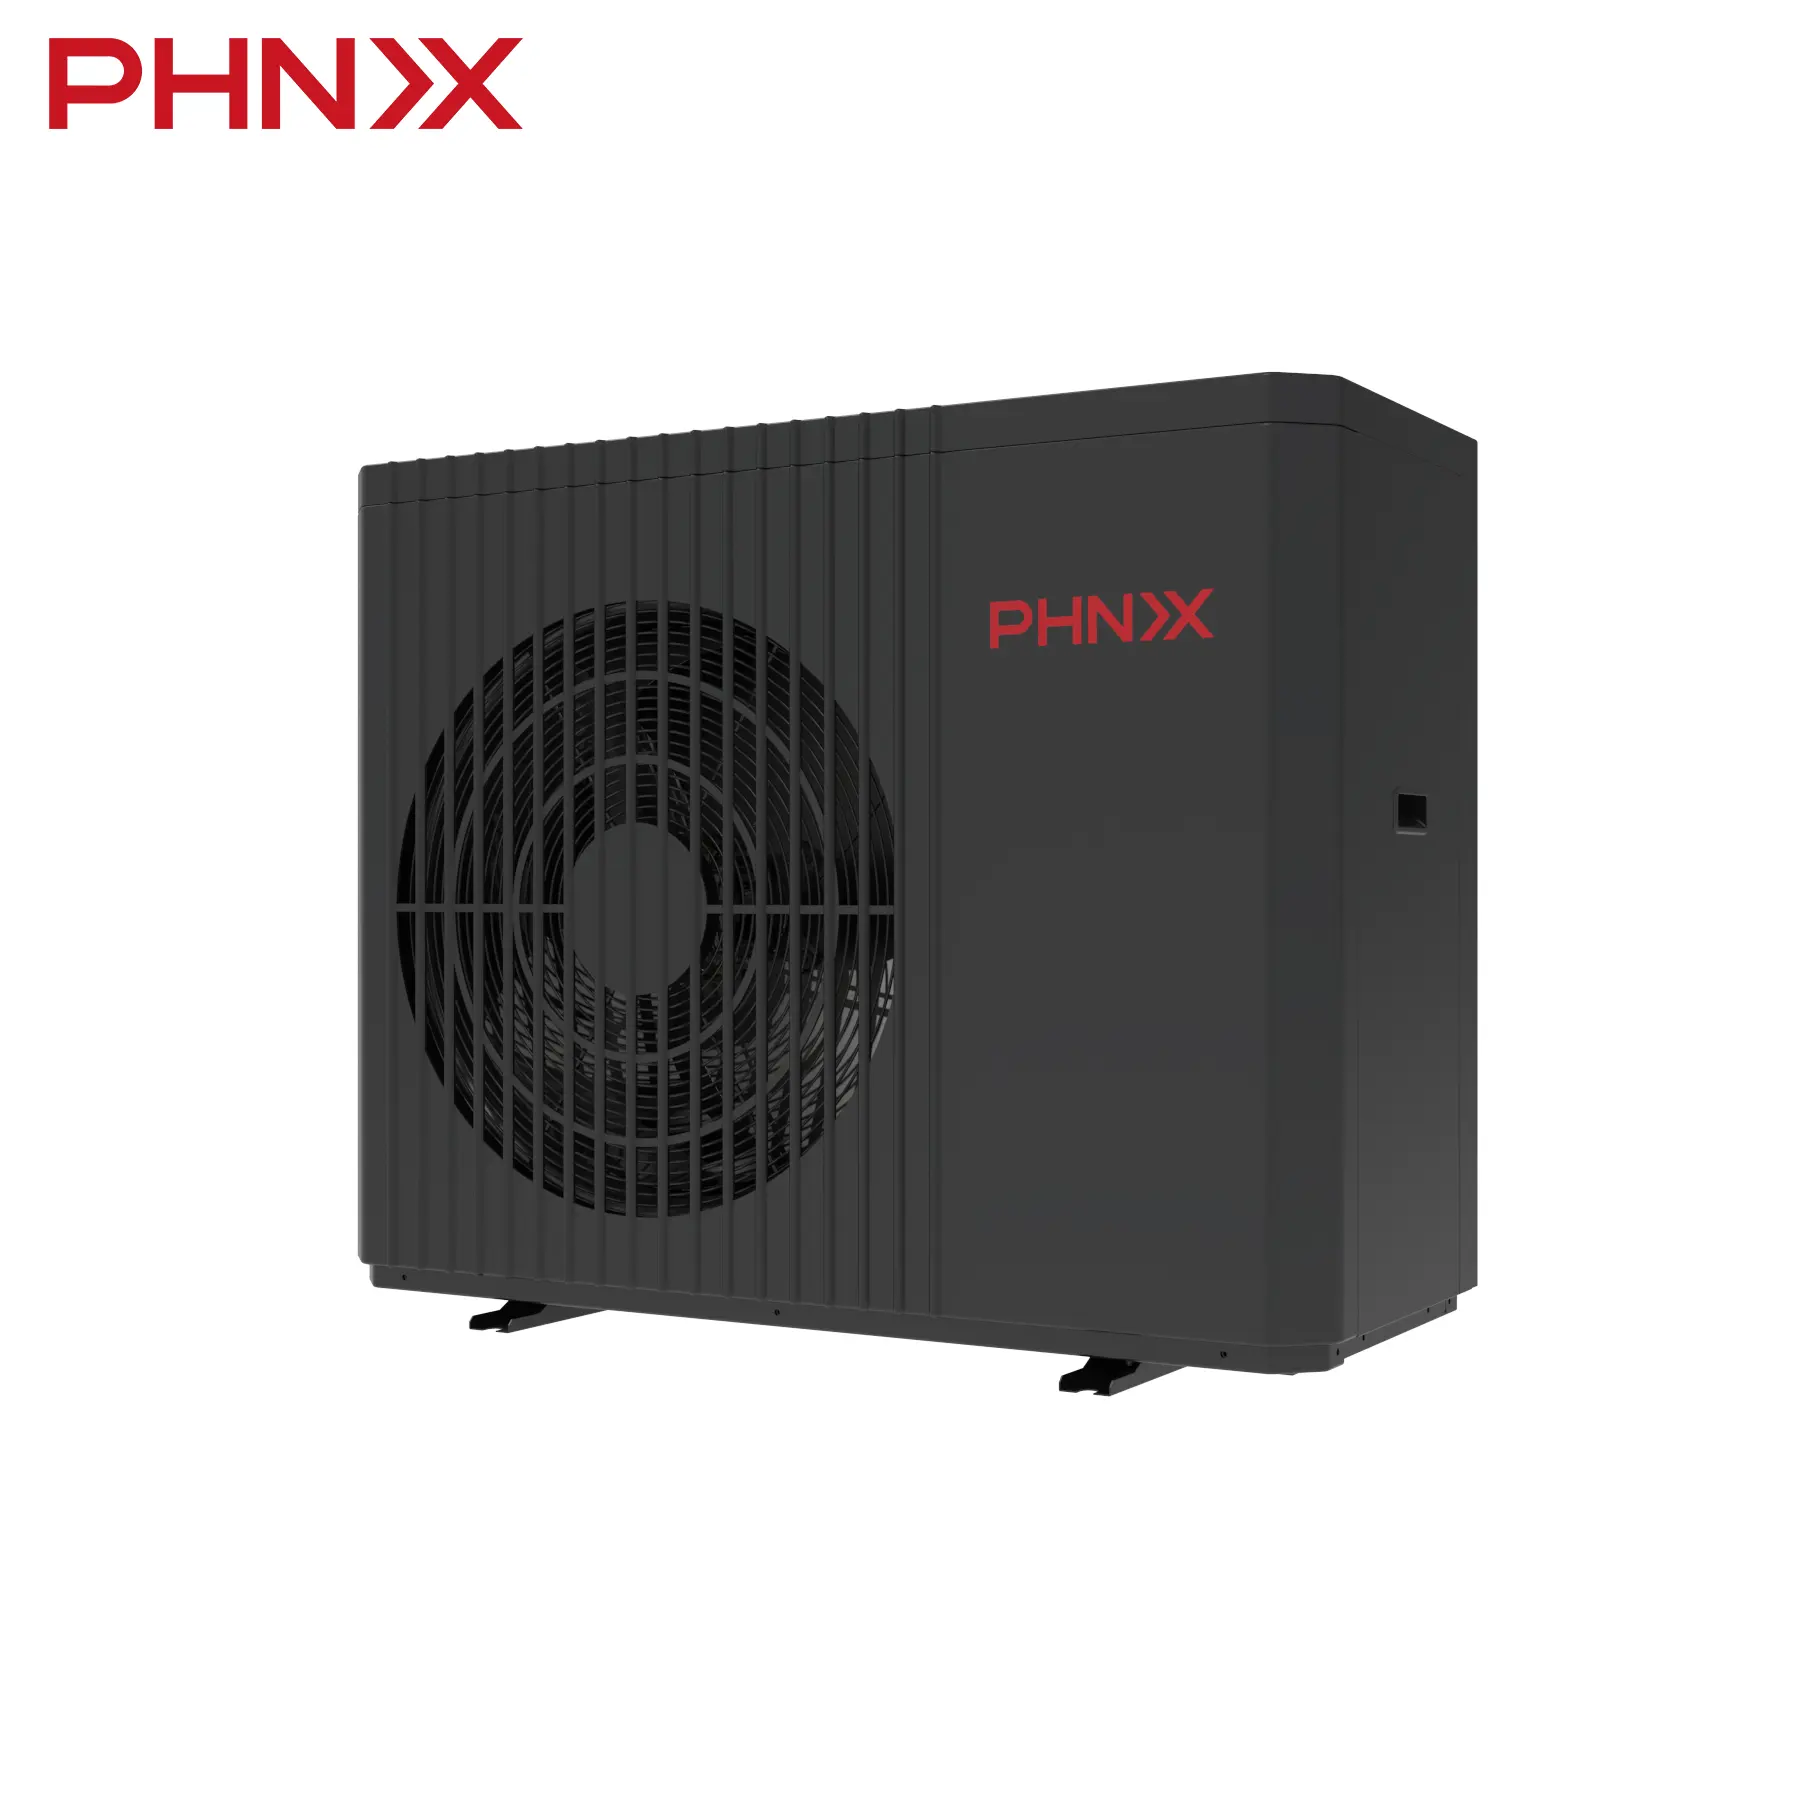 PHNIX R32 A +++ pompa di calore aria-acqua ad alta efficienza riscaldamento raffreddamento pompa di calore acqua calda con Inverter DC completo